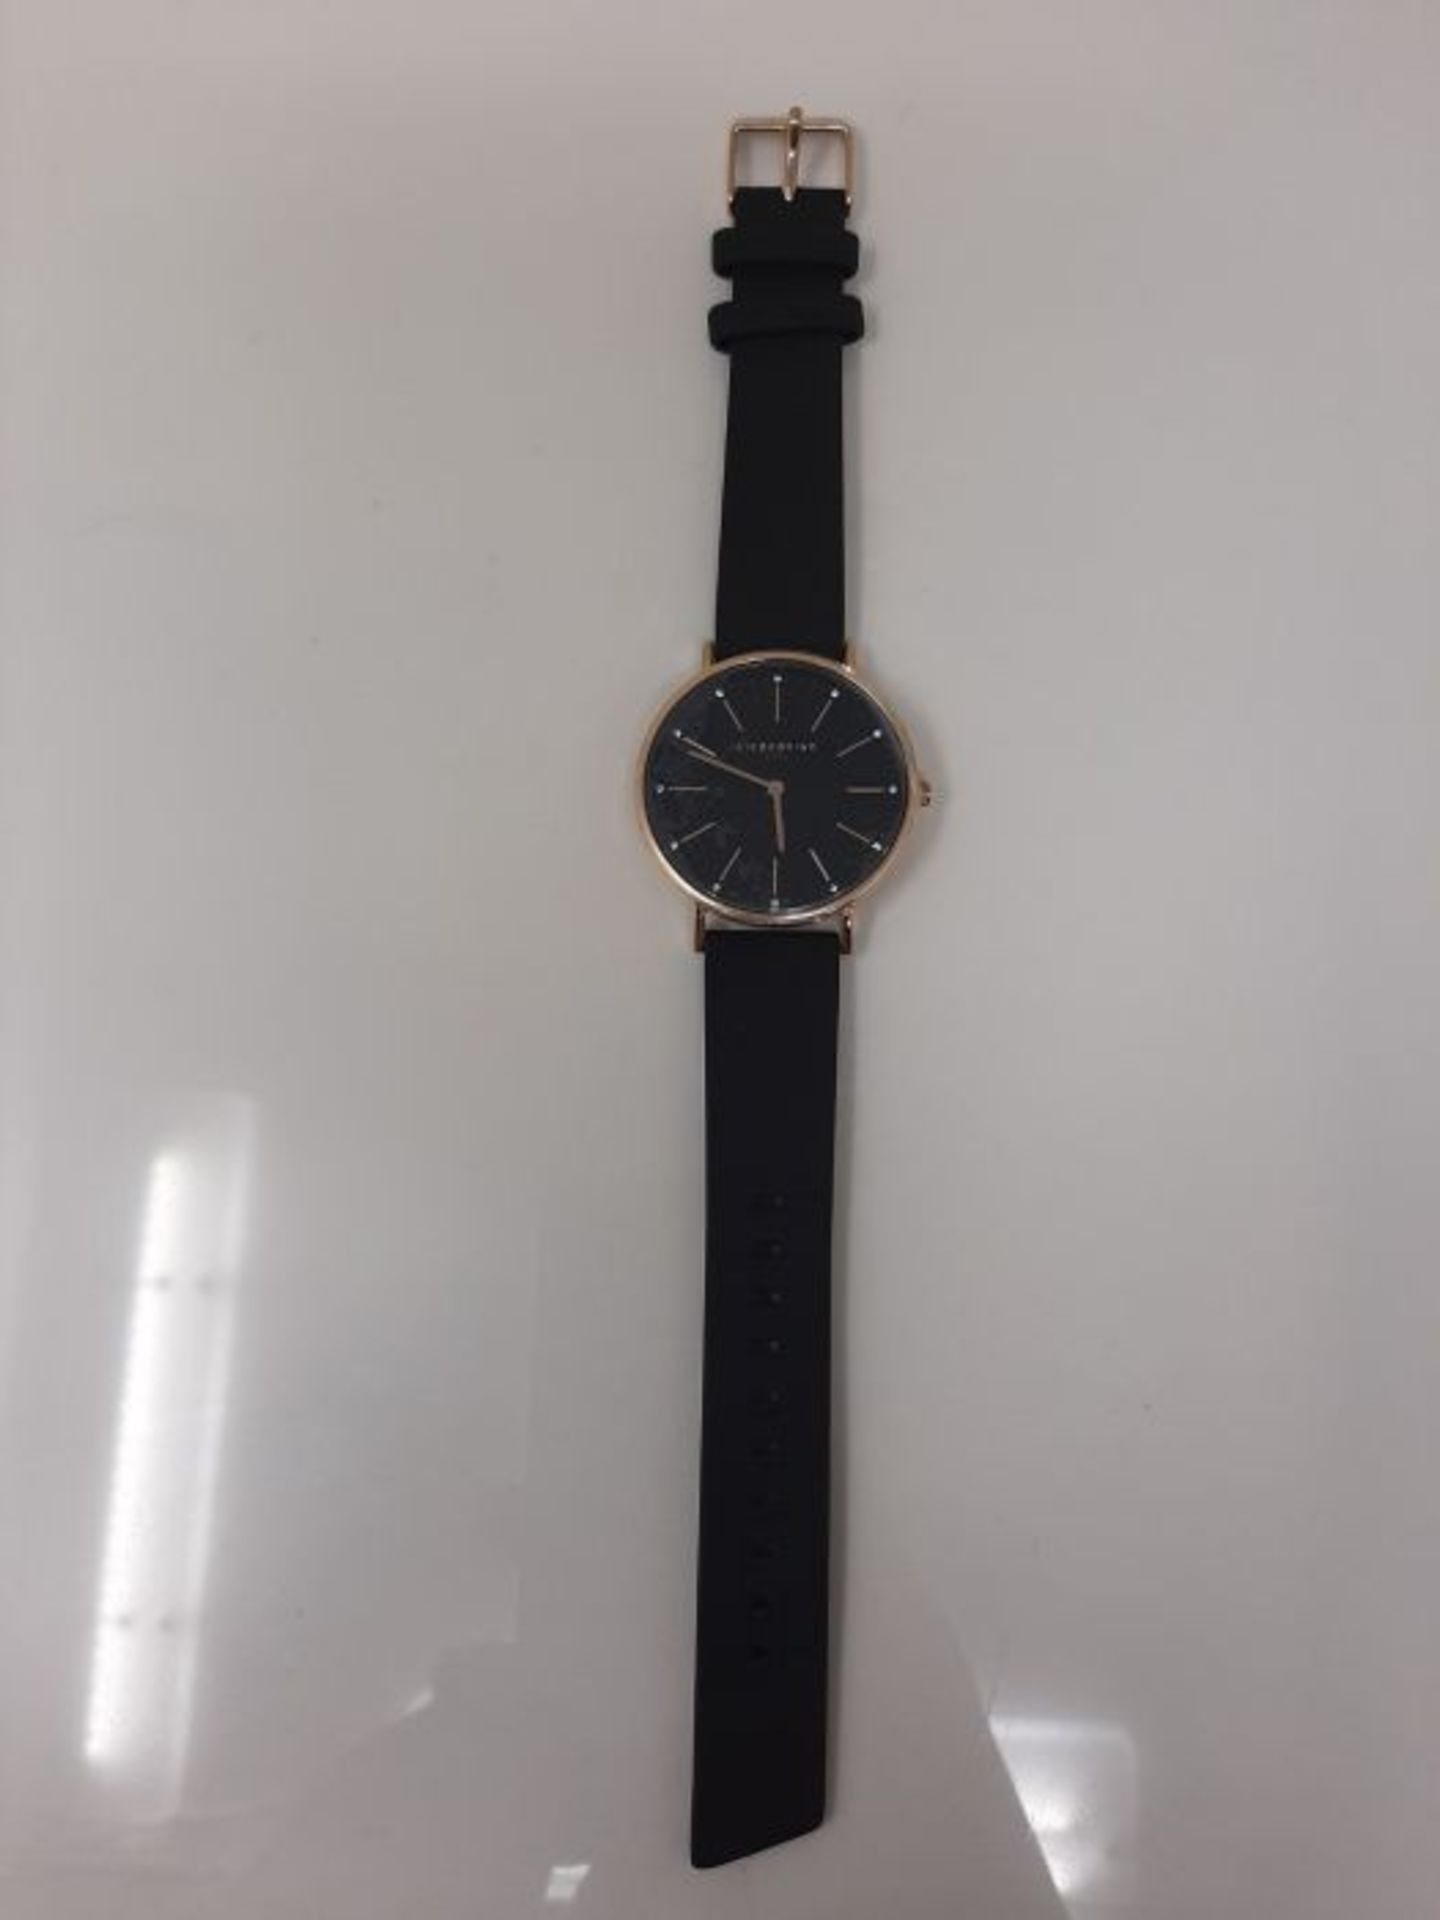 RRP £89.00 Liebeskind Berlin Damen Analog Quarz Uhr mit Leder Armband LT-0186-LQ - Image 3 of 3